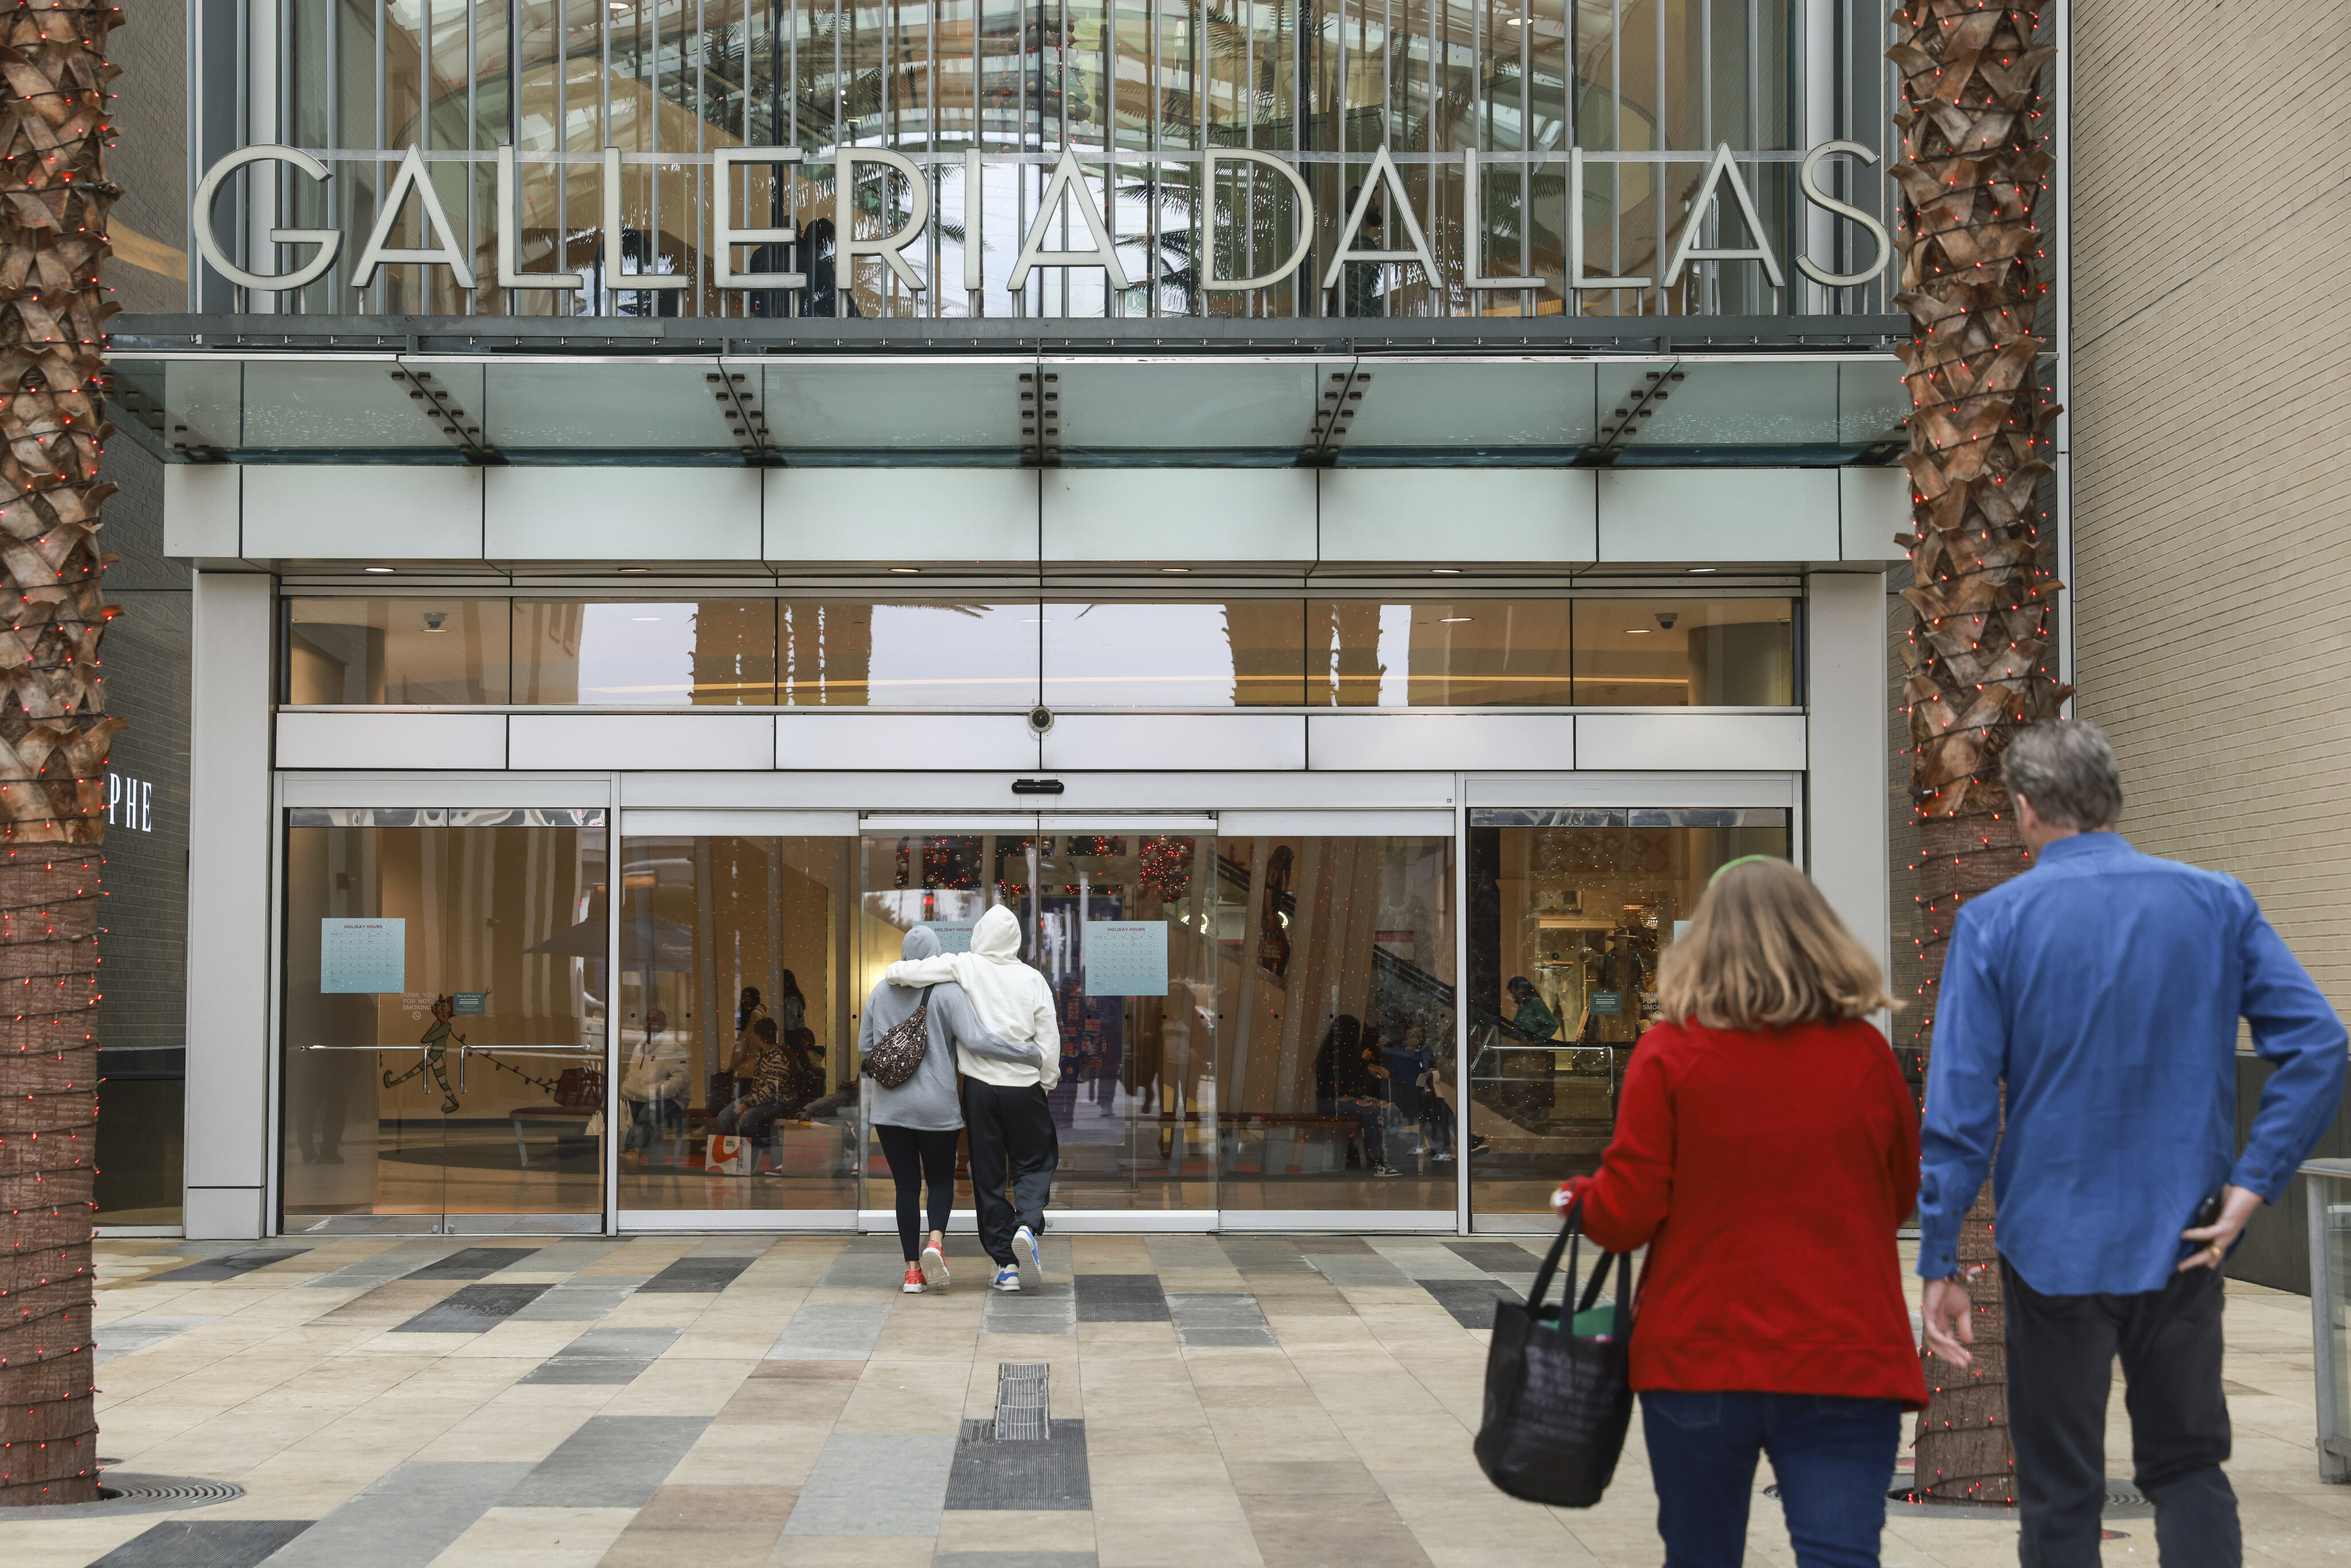 The mall - Picture of The Westin Galleria Dallas - Tripadvisor